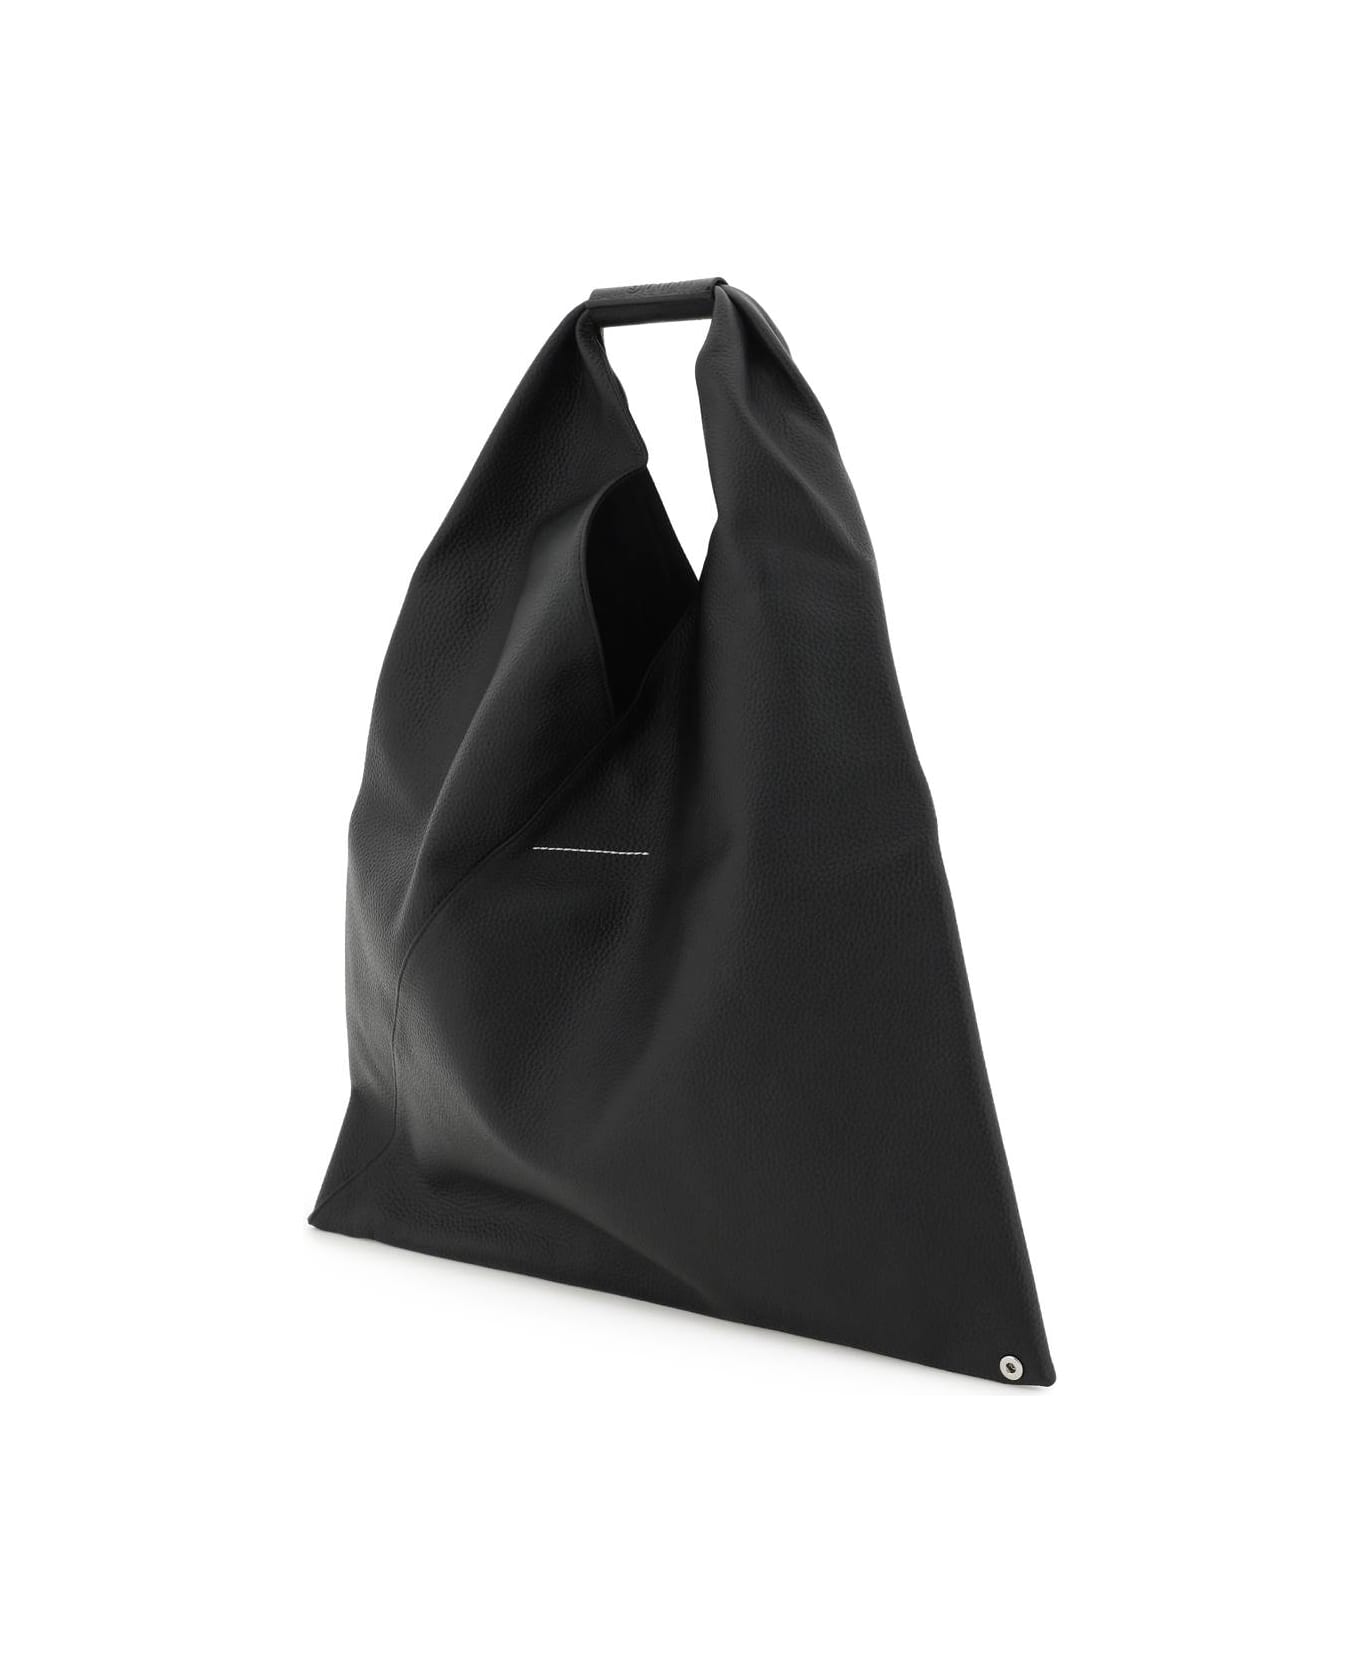 MM6 Maison Margiela Japanese Bag Handbag - Black